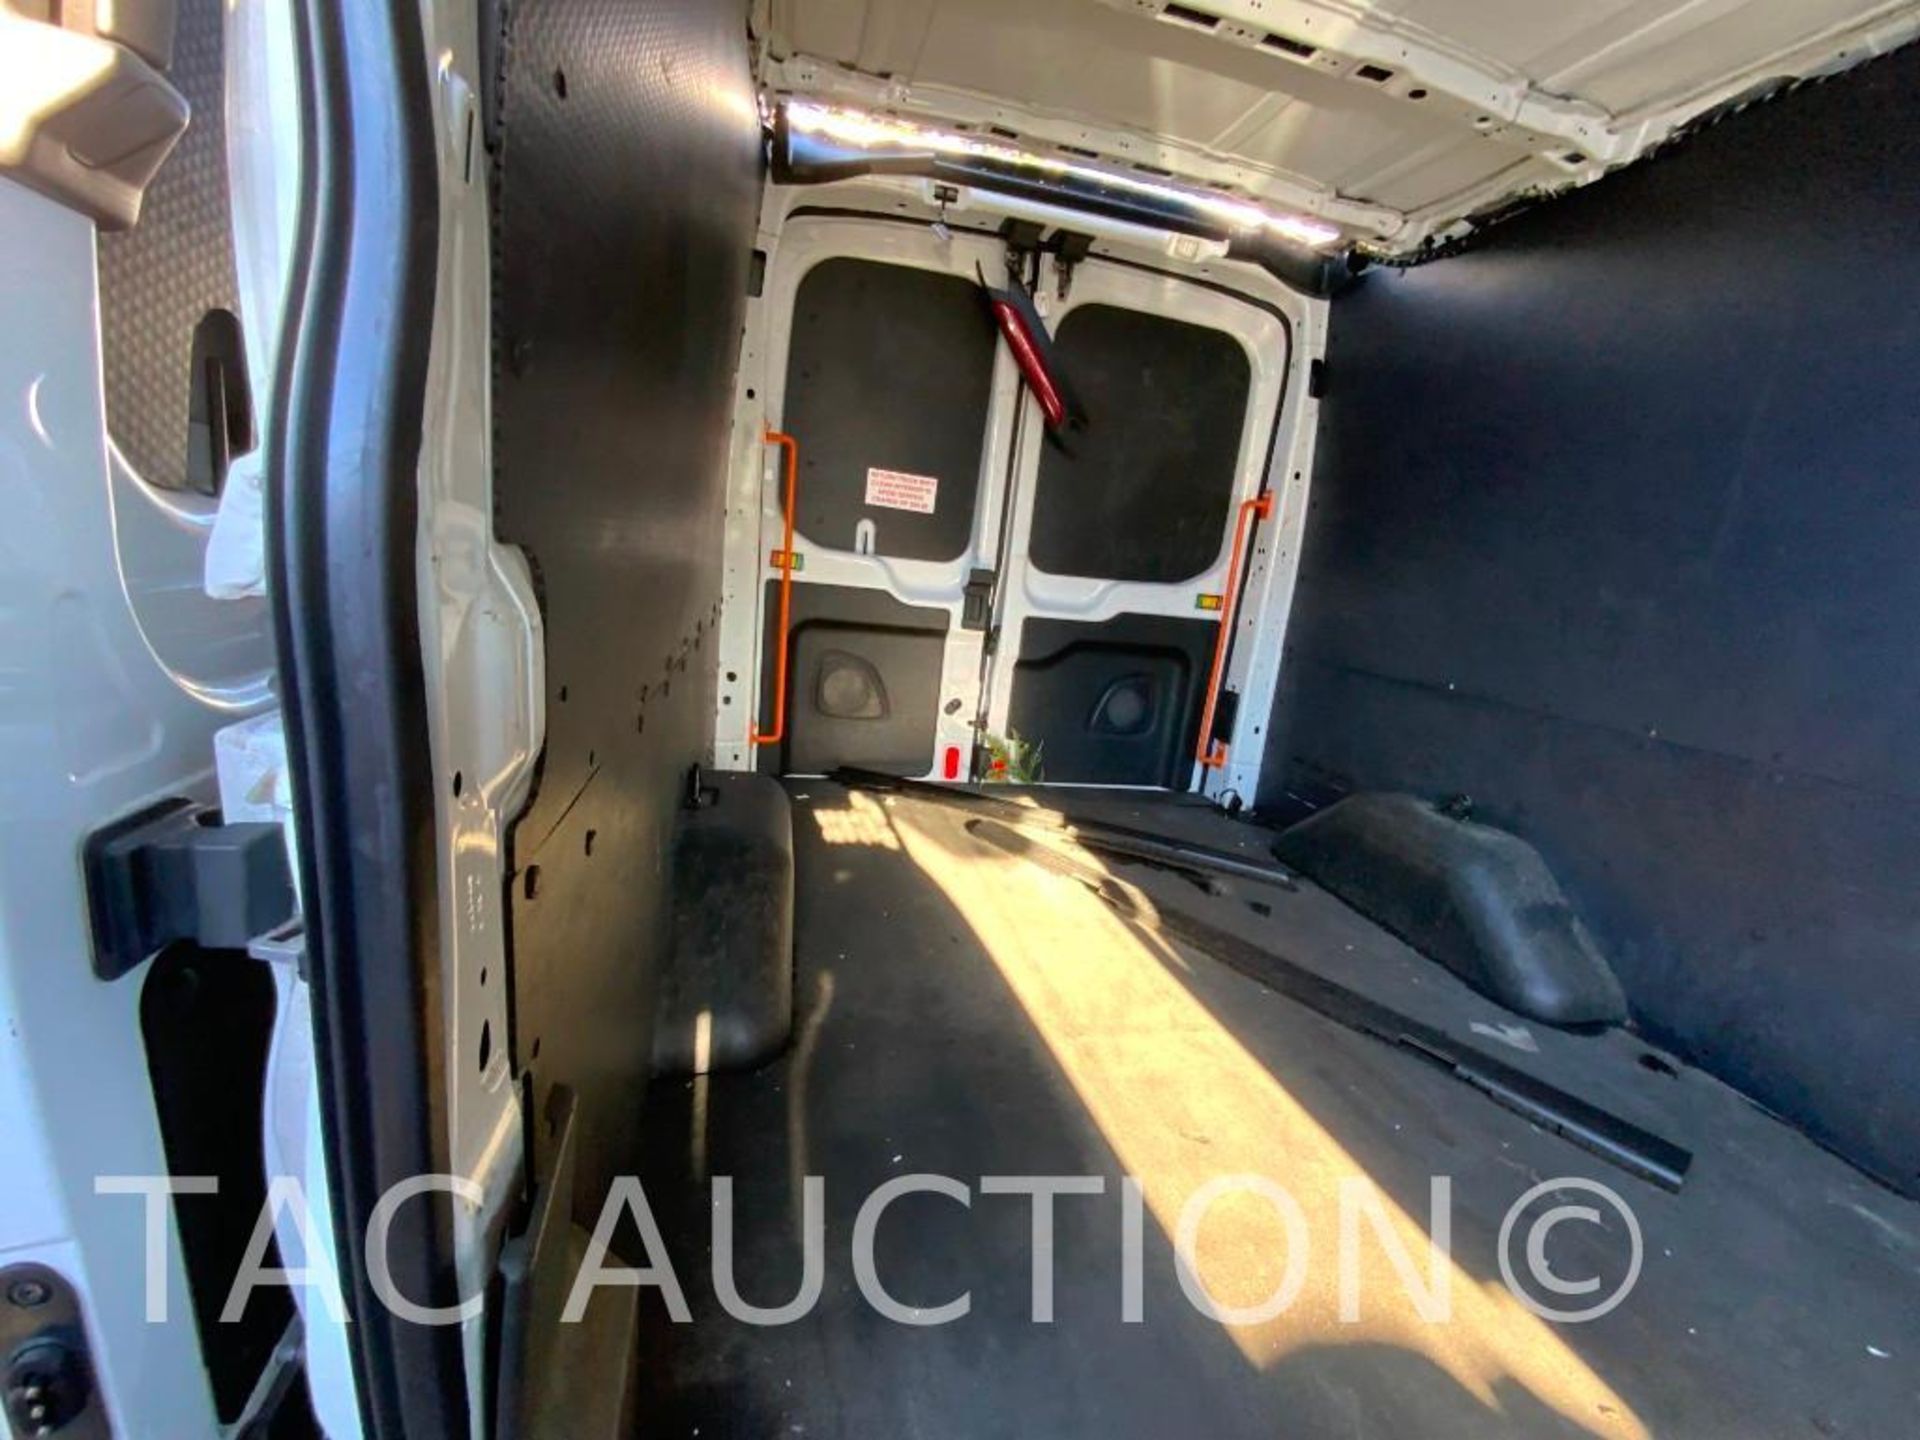 2019 Ford Transit 150 Cargo Van - Image 34 of 52